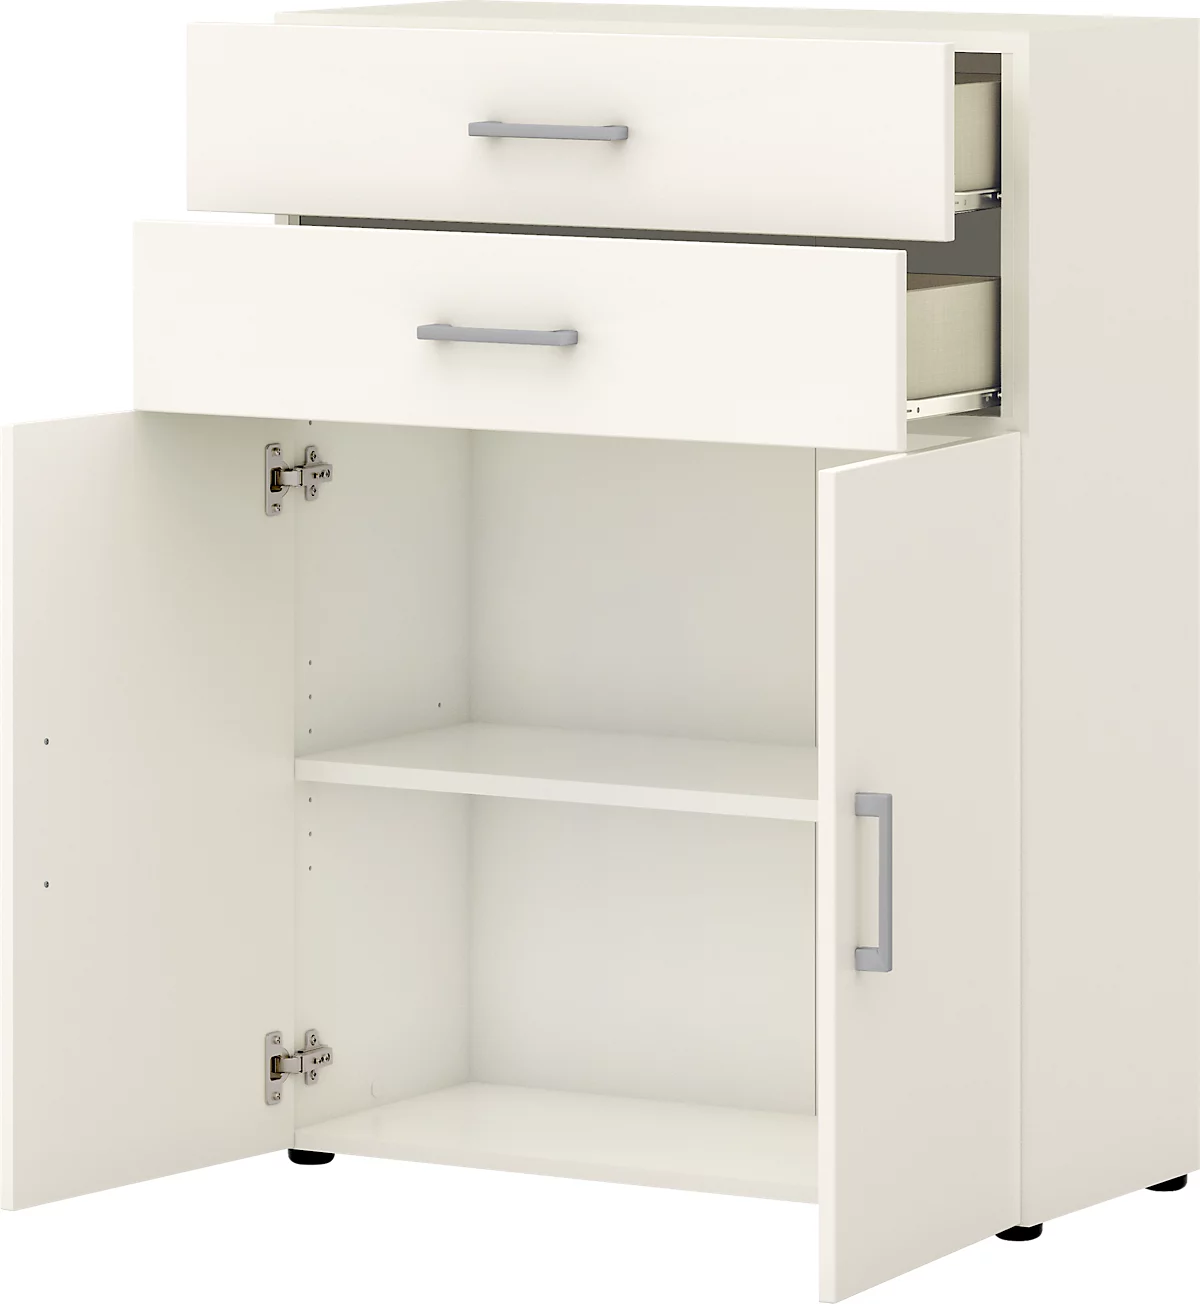 Bürokommode TEMPIO, aus Holz, 2 Türen, 2 Schubkästen, 3 OH, B 800 x T 340 x H 1070 mm, weiss/weiss